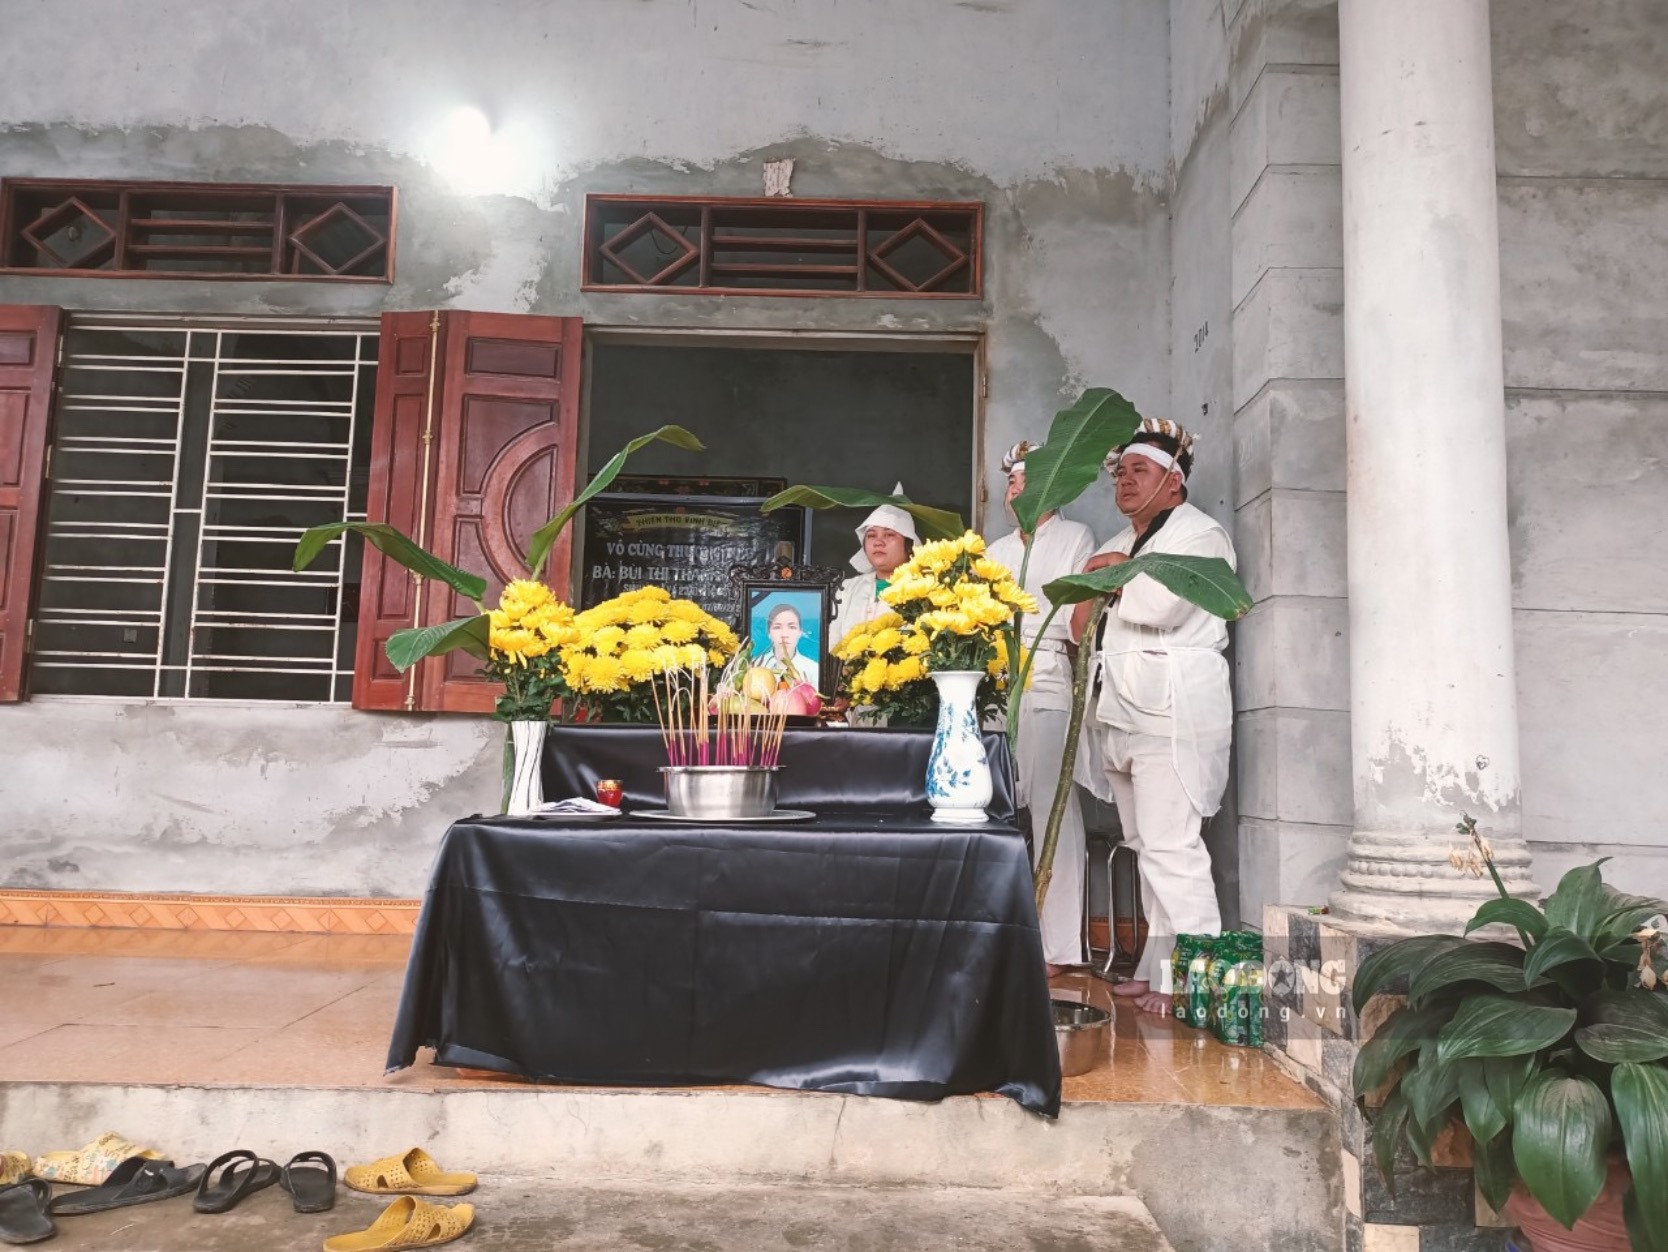 Đám tang của cô giáo Bùi Thị Thanh Hoa vừa được tổ chức sáng nay (8.2) tại quê nhà Vĩnh Tiến, Kim Bôi, Hoà Bình. Ảnh: Nhà trường cung cấp